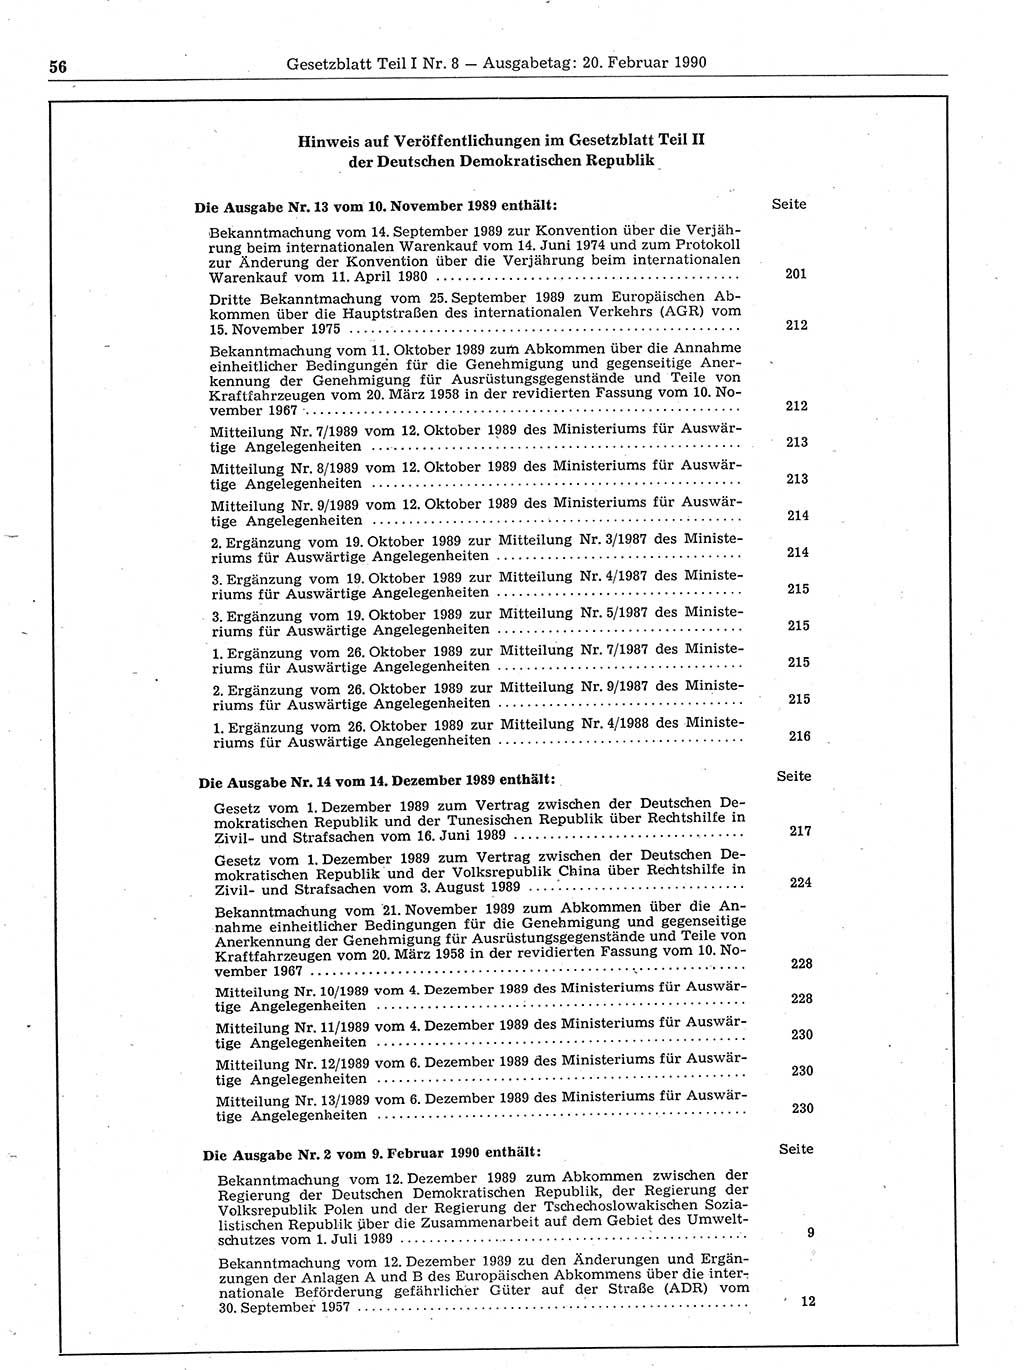 Gesetzblatt (GBl.) der Deutschen Demokratischen Republik (DDR) Teil Ⅰ 1990, Seite 56 (GBl. DDR Ⅰ 1990, S. 56)